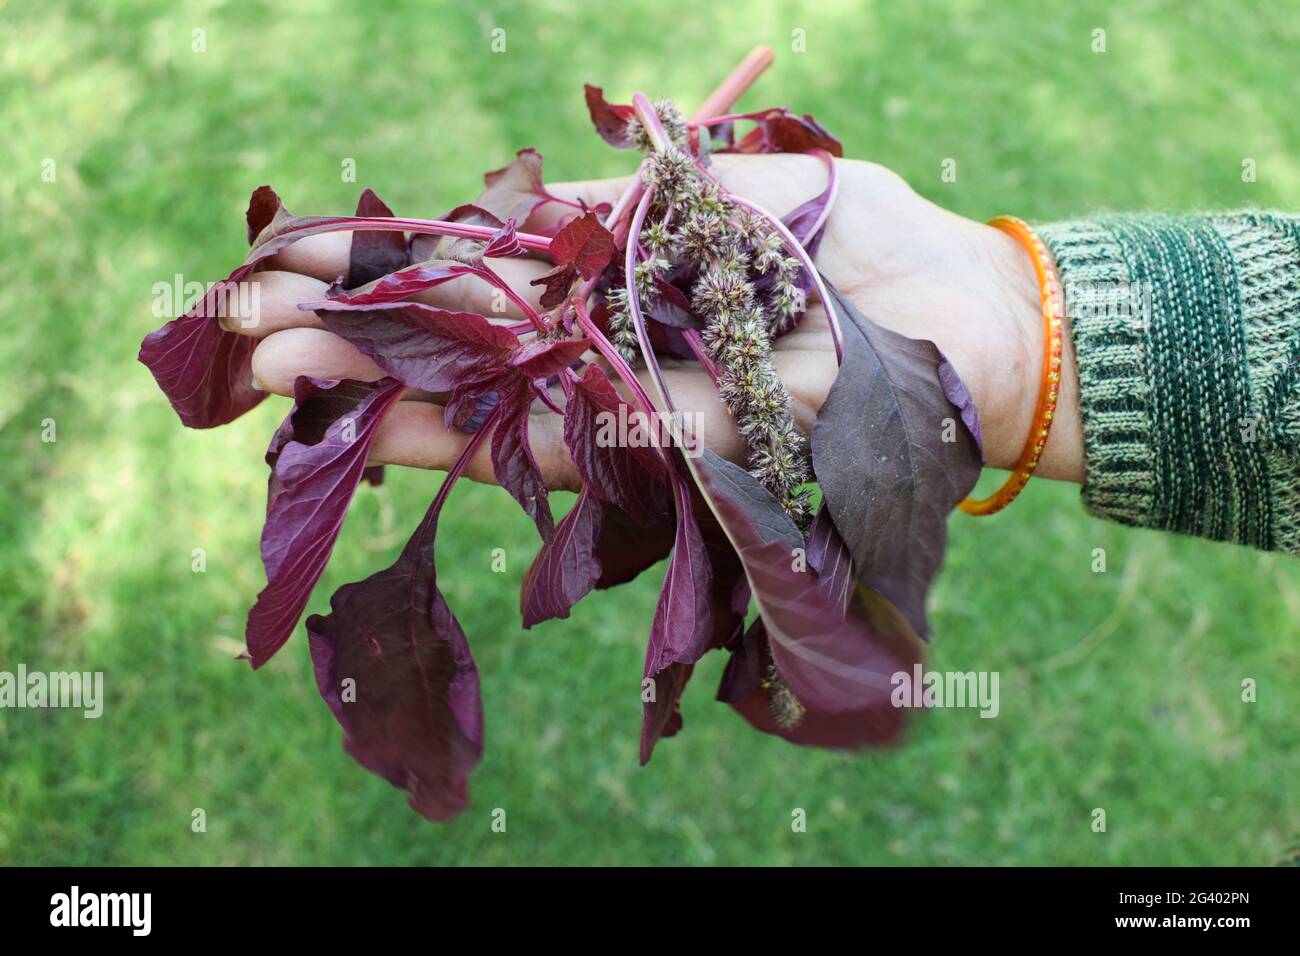 Cesto di contenimento femminile pieno di verdure a foglia di spinaci rossi organici. Raccolto a mano cresciuto in India Asia. Foto Stock